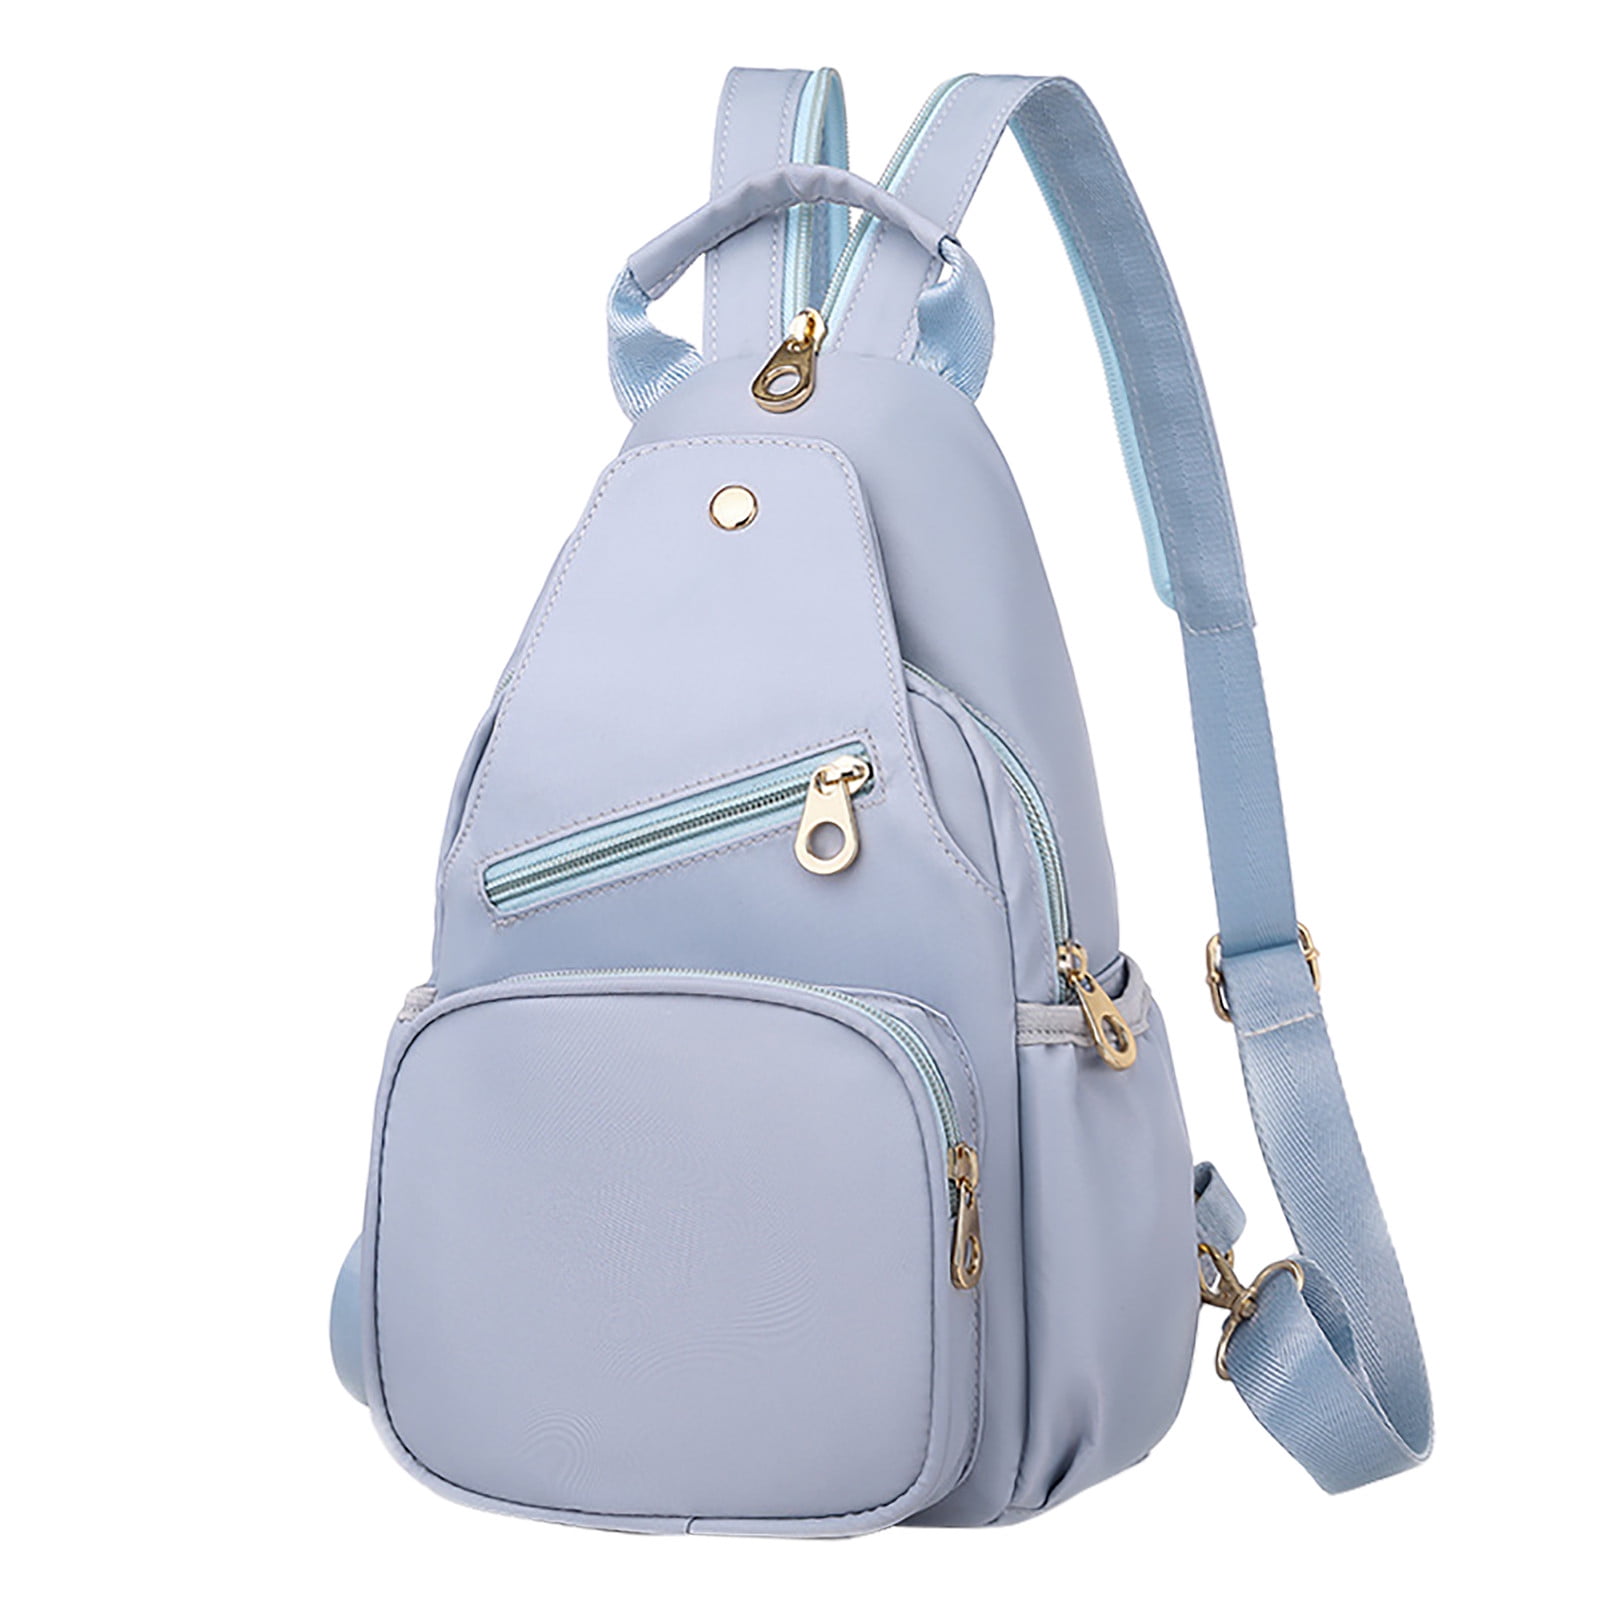 Luxury Designer Backpack For Women And Men Old Fashioned Backpack Shoulder  Bag For Teenage Girls And Handbag Style From Fallinlovebag, $66.82 |  DHgate.Com